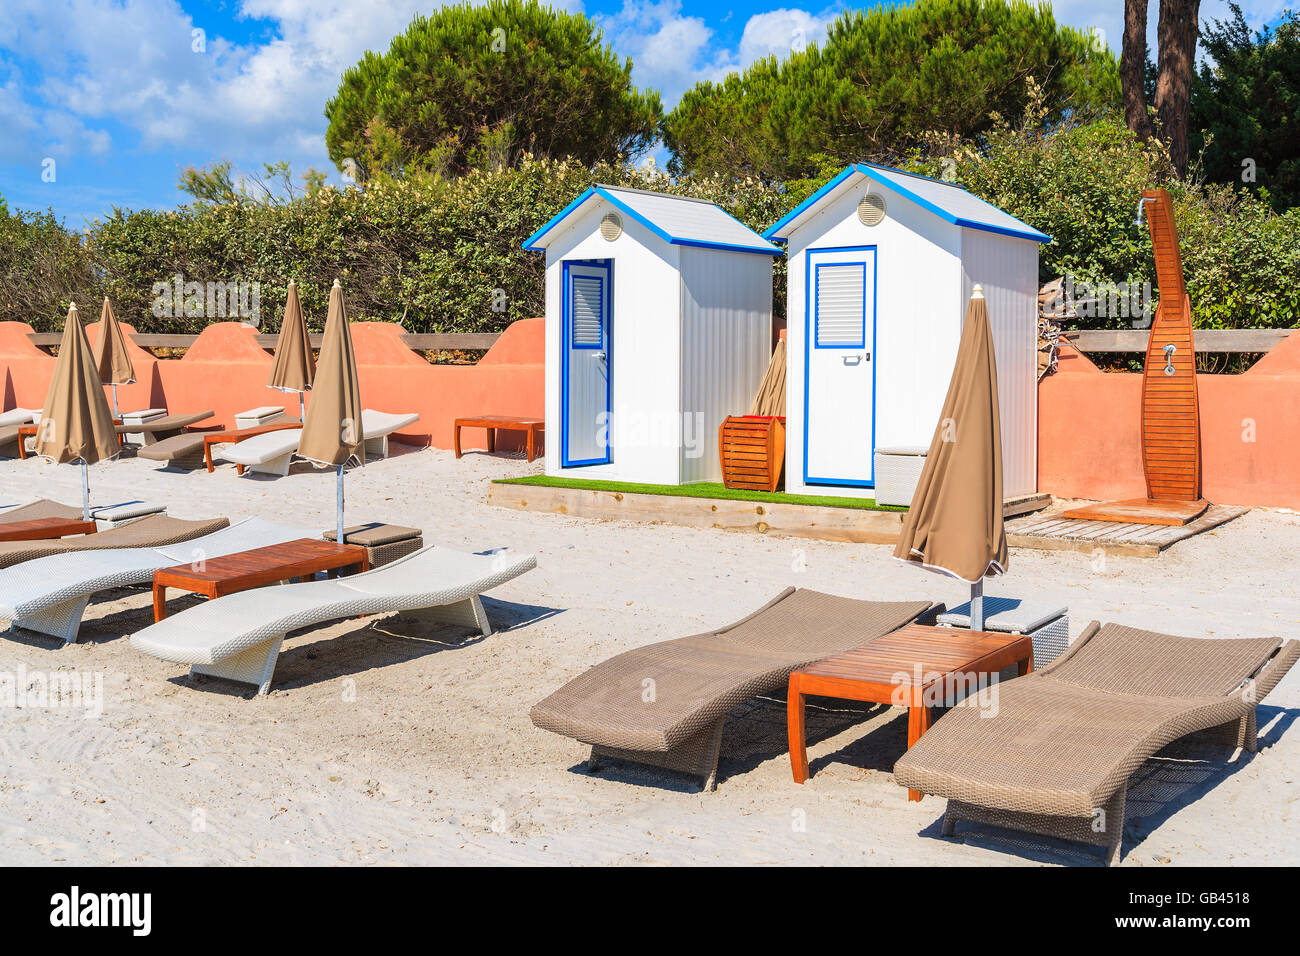 Tumbonas y cabinas de cambio sobre la hermosa arena blanca playa de Palombaggia, Córcega, Francia Foto de stock